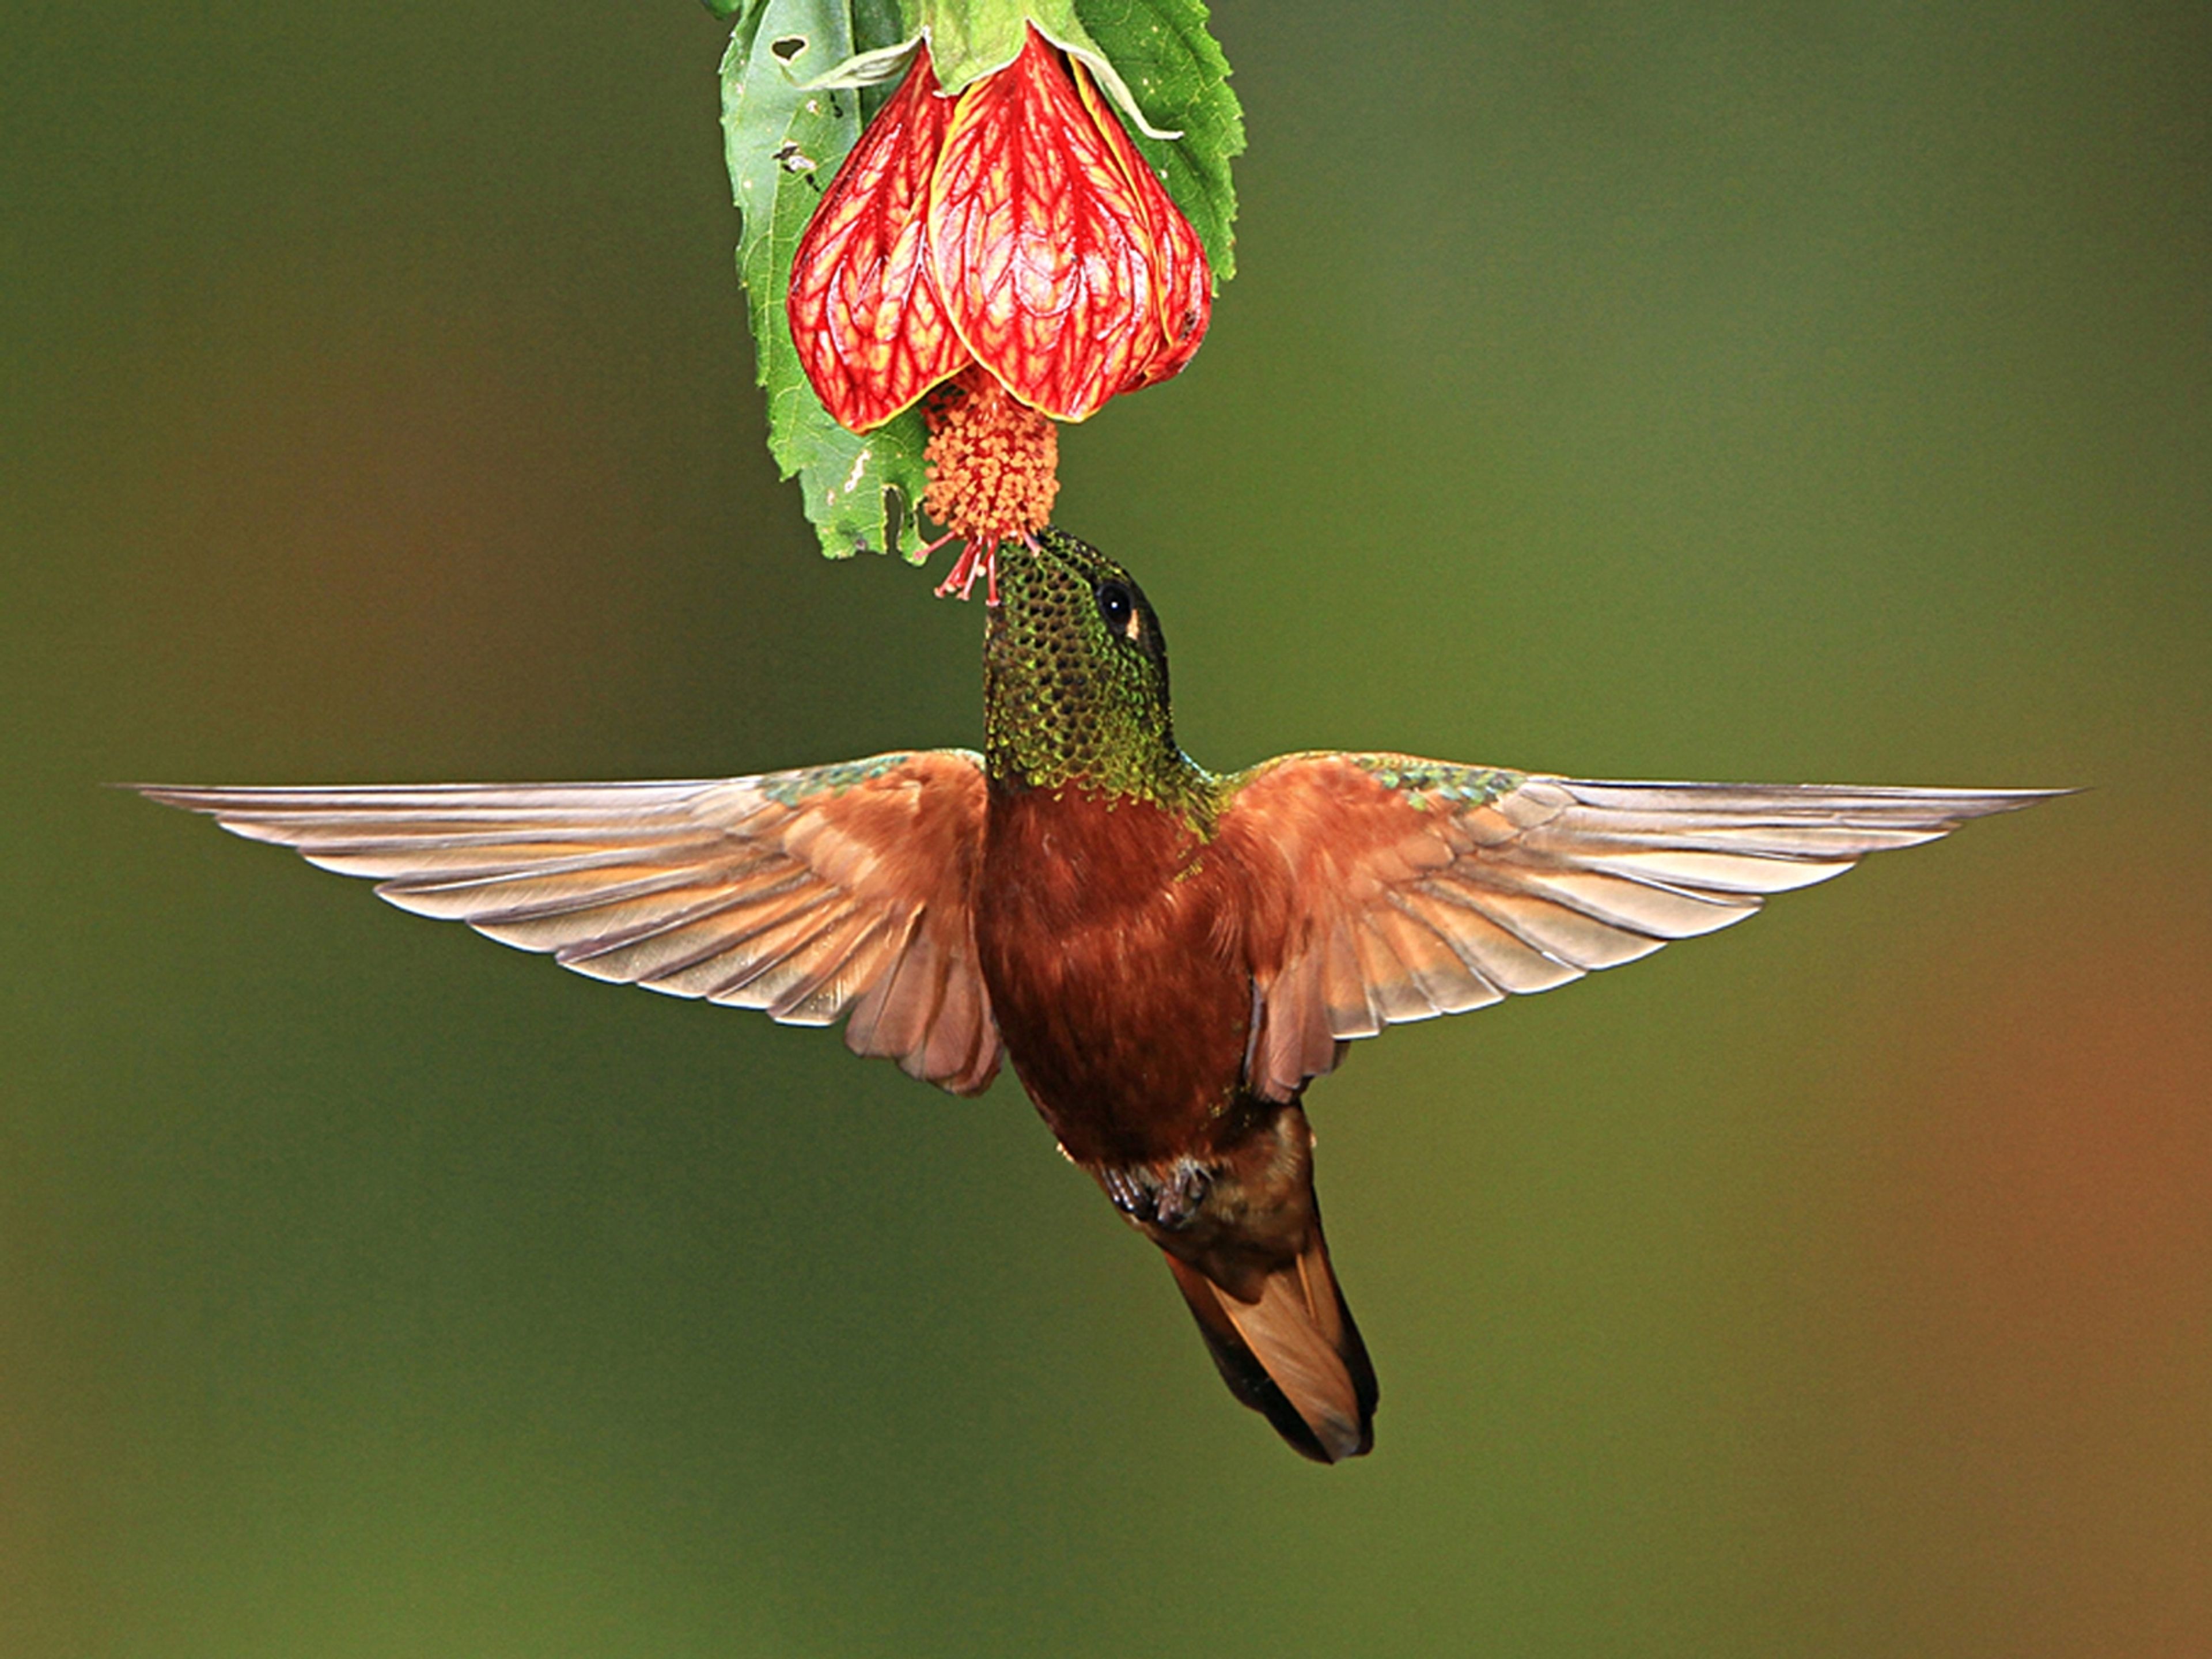 Hummingbird by John Barker